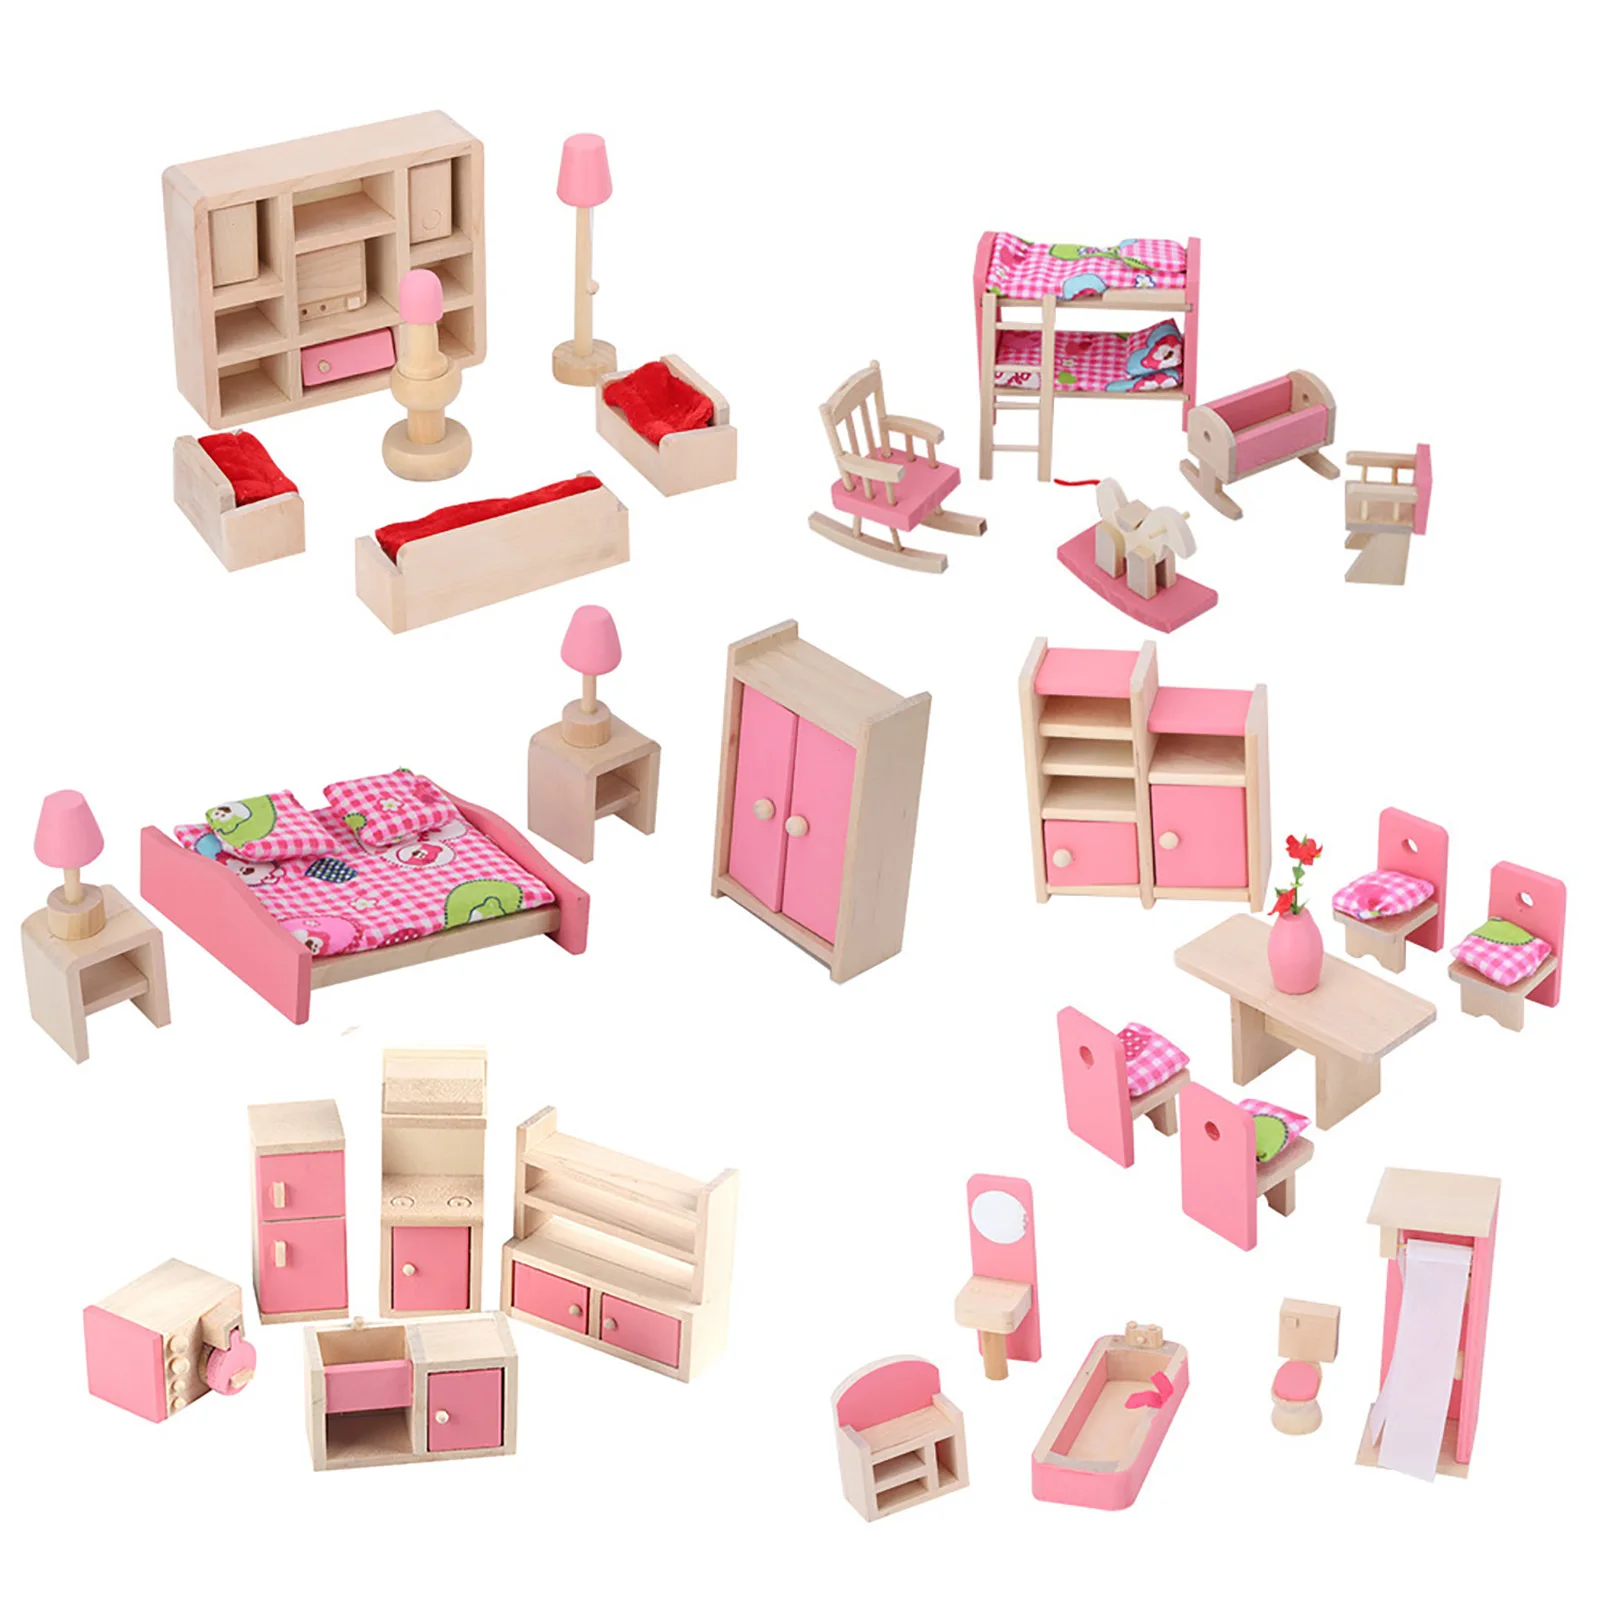 

Набор миниатюрной мебели для кукольного домика в масштабе 1:12, миниатюрная деревянная модель прикроватного столика, шкафа, полки, игрушка для декора кукольного домика